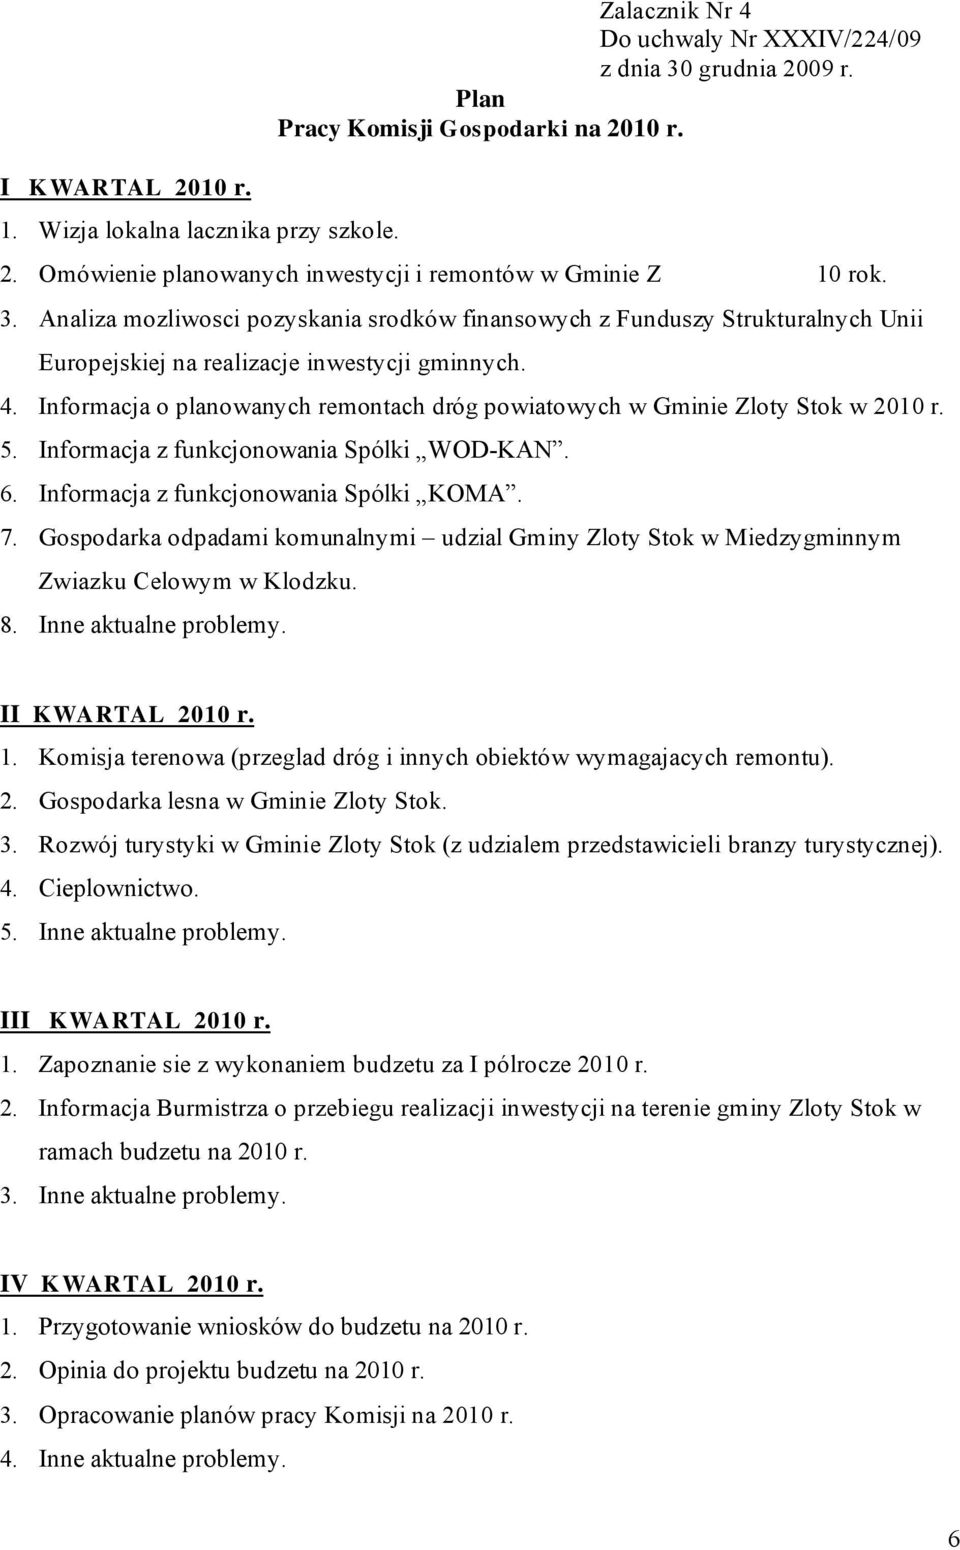 Informacja o planowanych remontach dróg powiatowych w Gminie Zloty Stok w 2010 r. 5. Informacja z funkcjonowania Spólki WOD-KAN. 6. Informacja z funkcjonowania Spólki KOMA. 7.